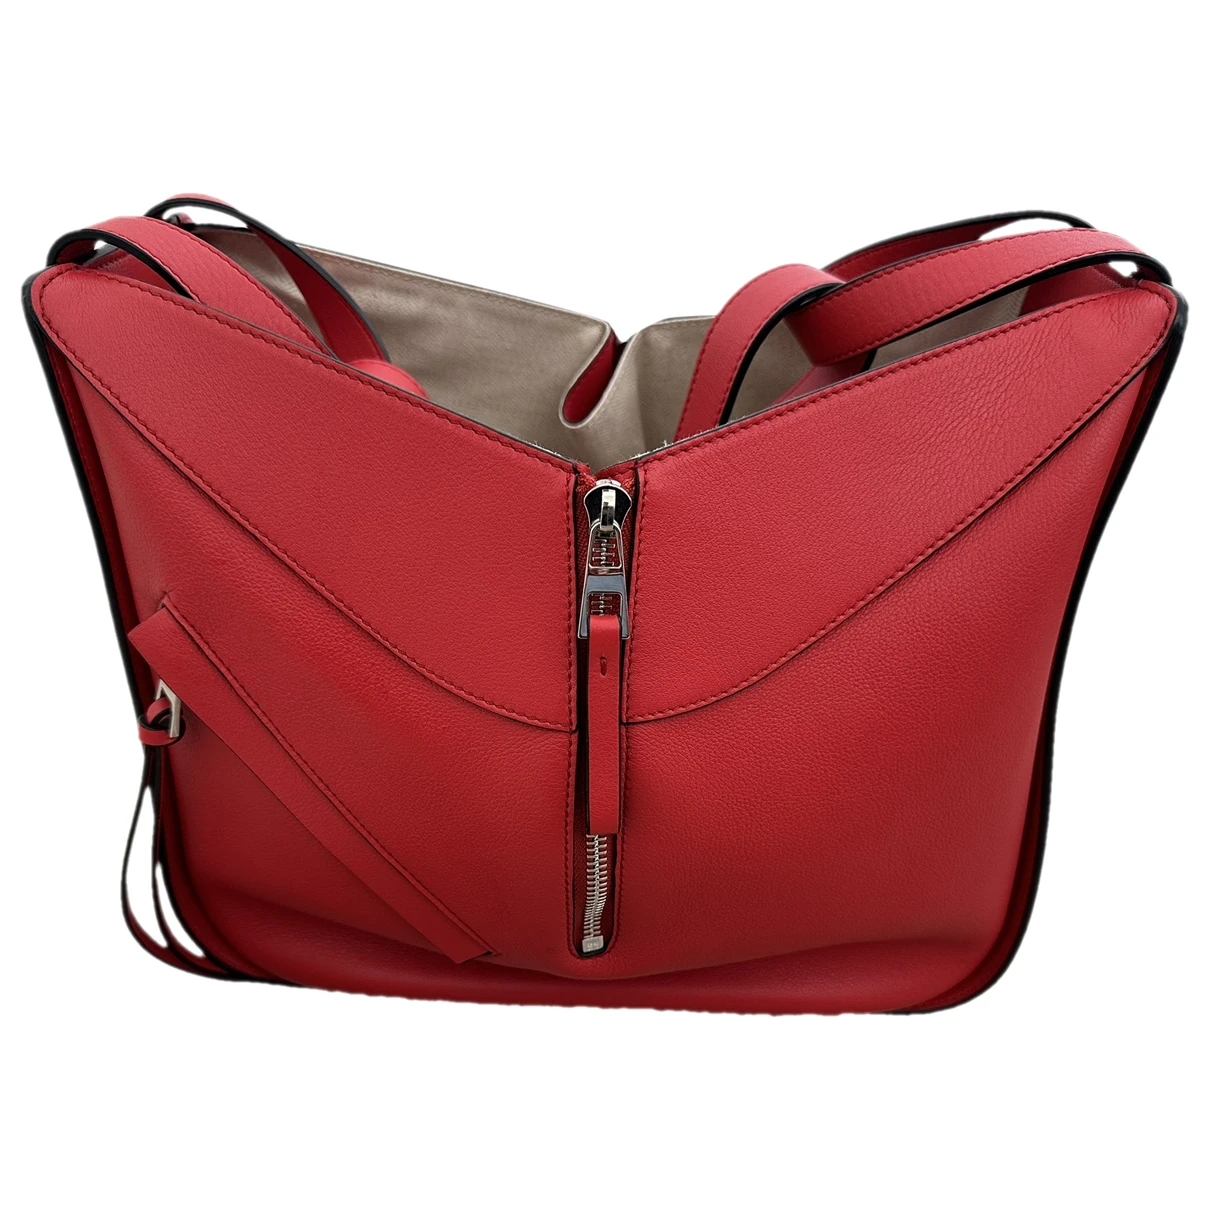 Pre-owned Loewe Hammock Leather Handbag In Red